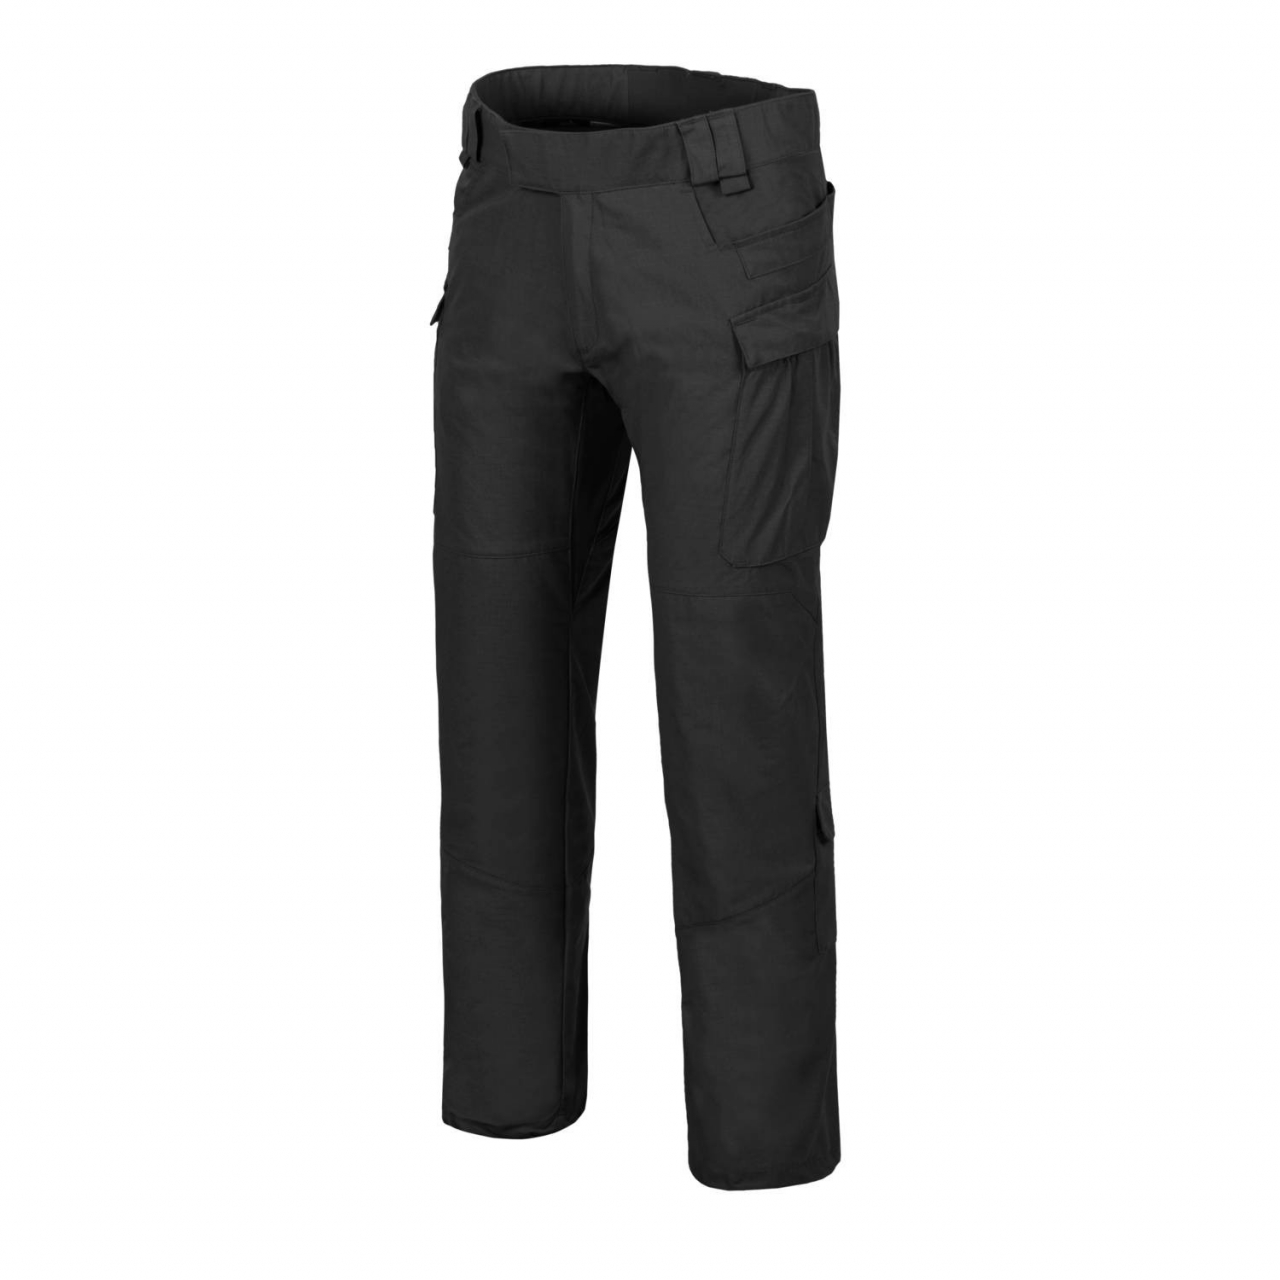 Kalhoty Helikon MBDU NyCo Ripstop - černé, M Short